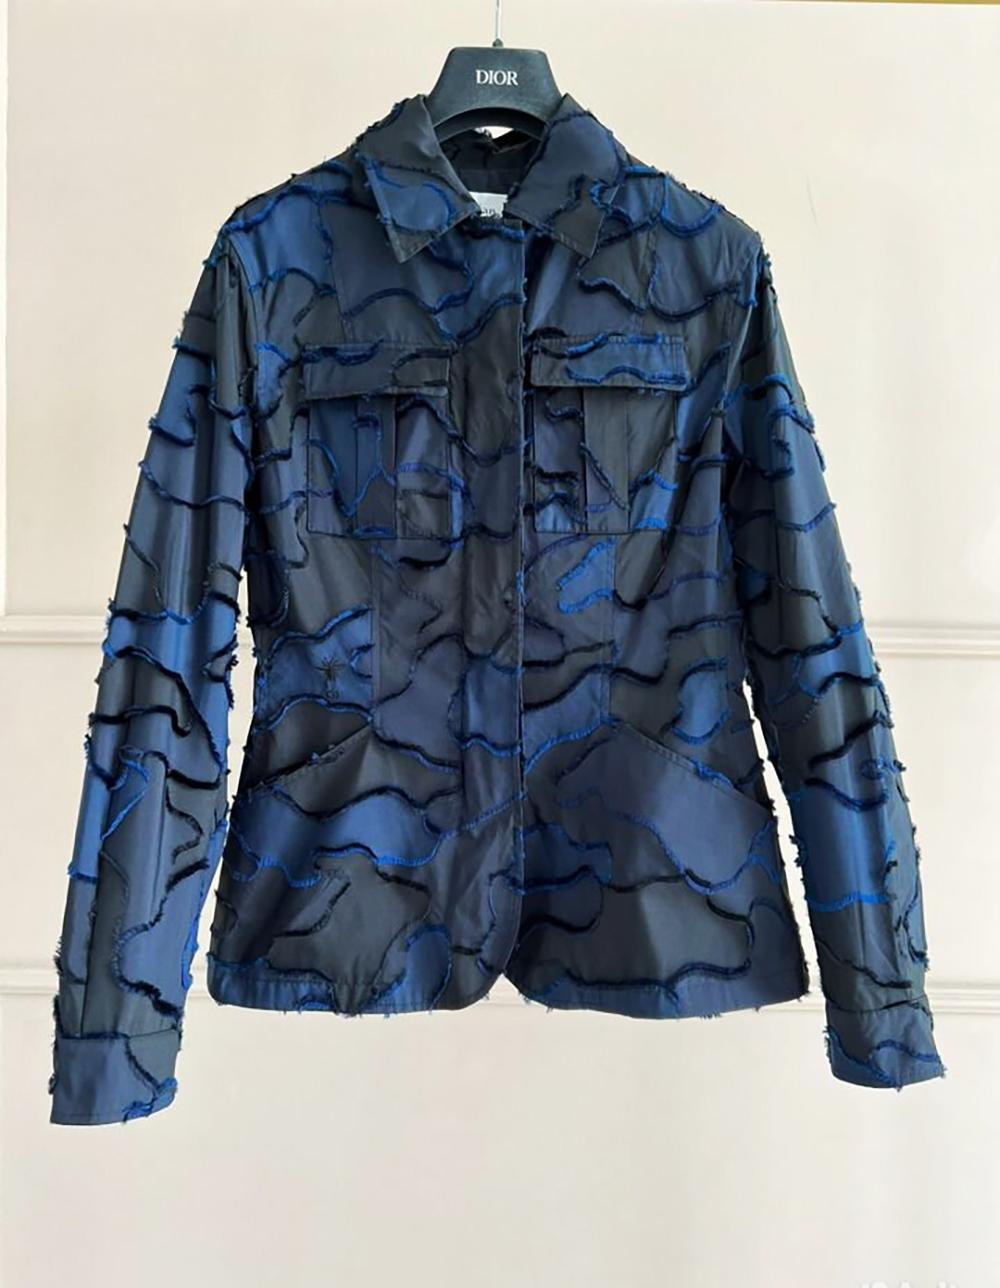 dior blue jacket